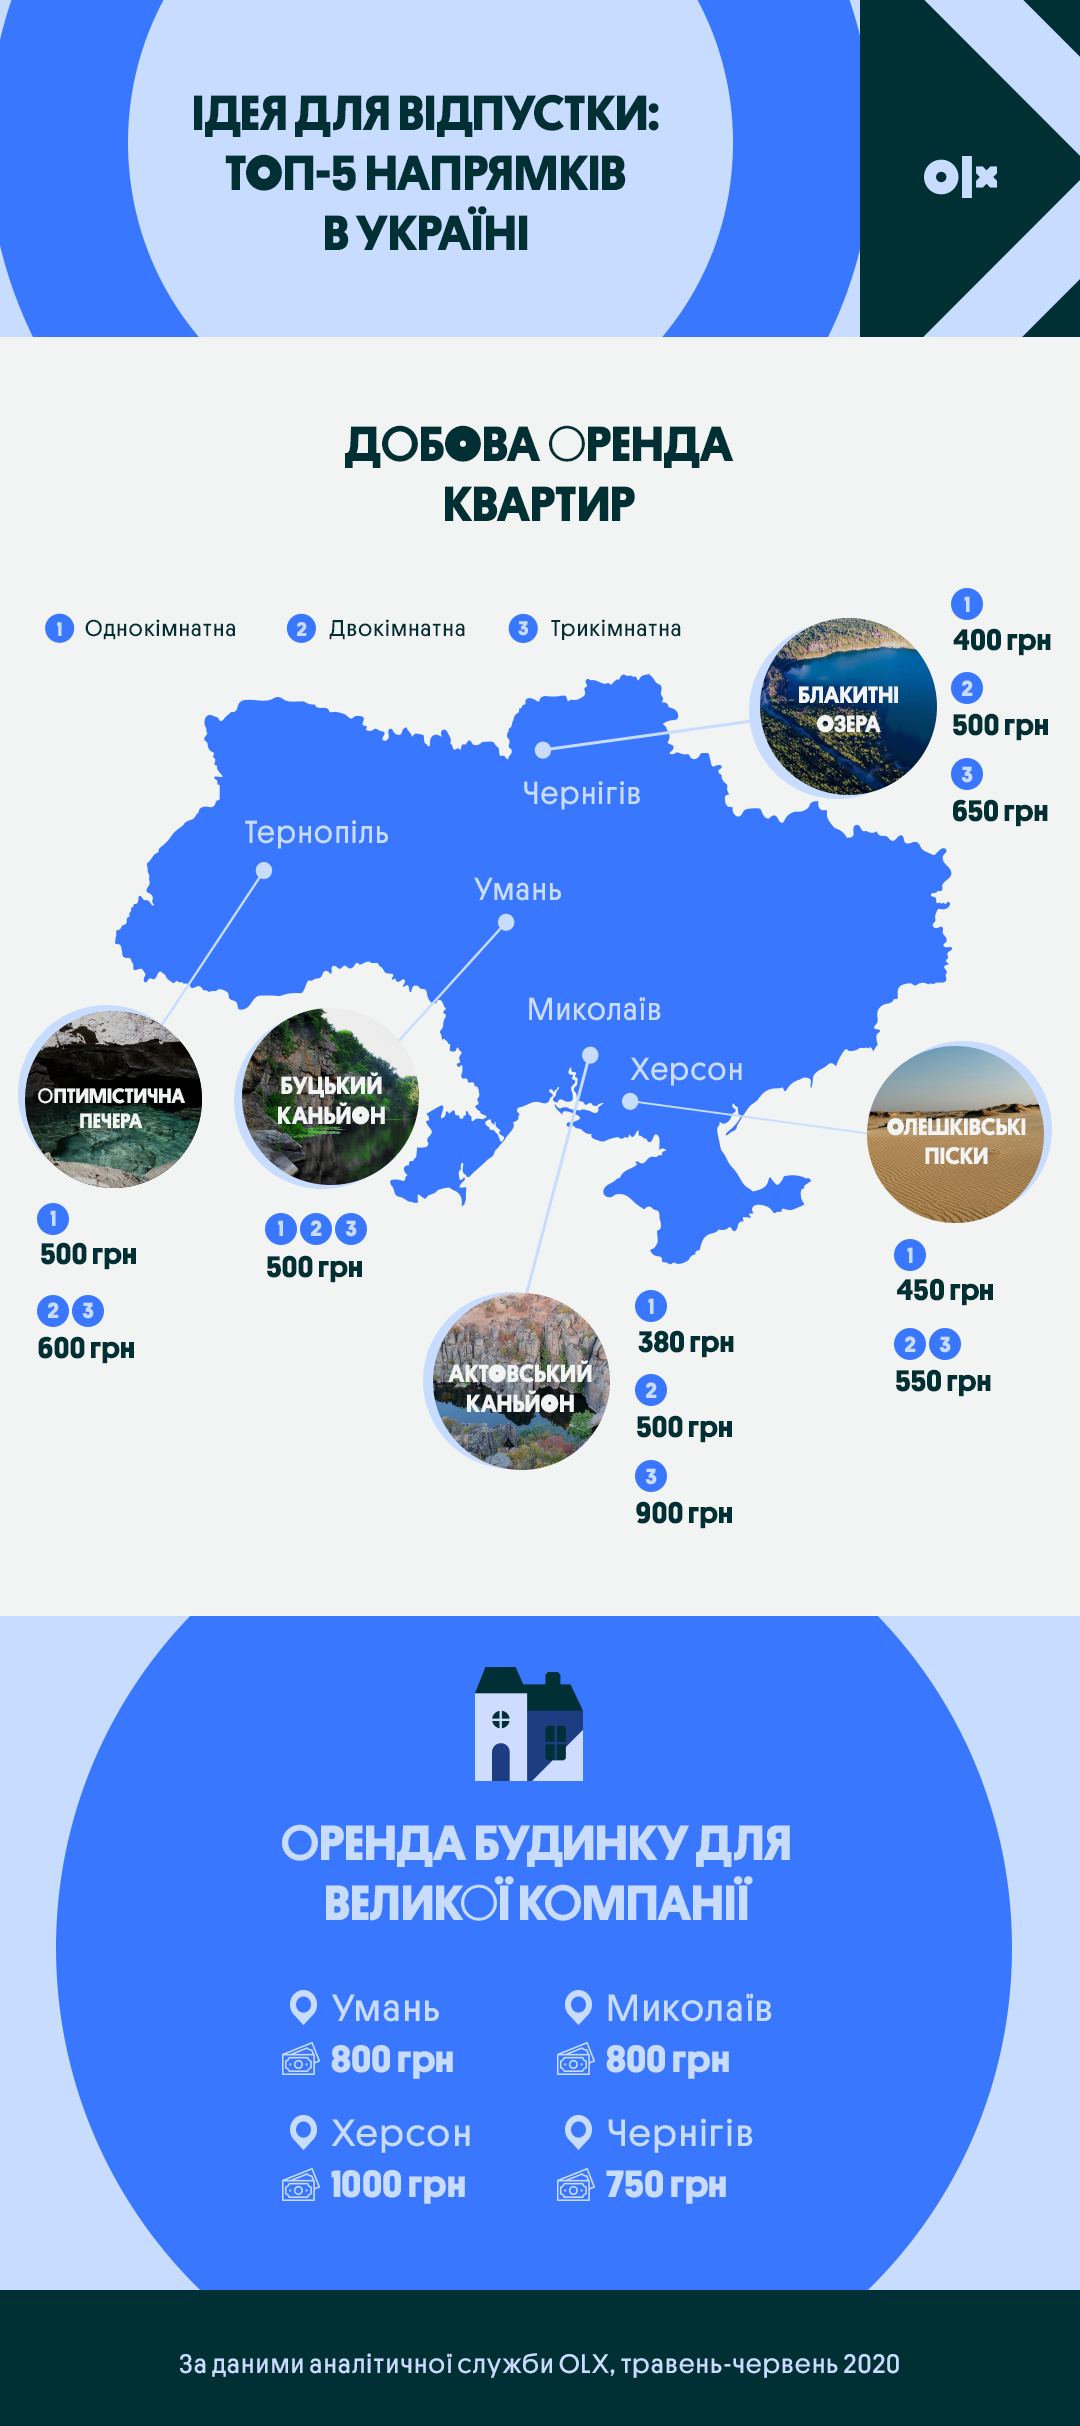 Ідея для відпустки: топ-5 нестандартних напрямків в Україні